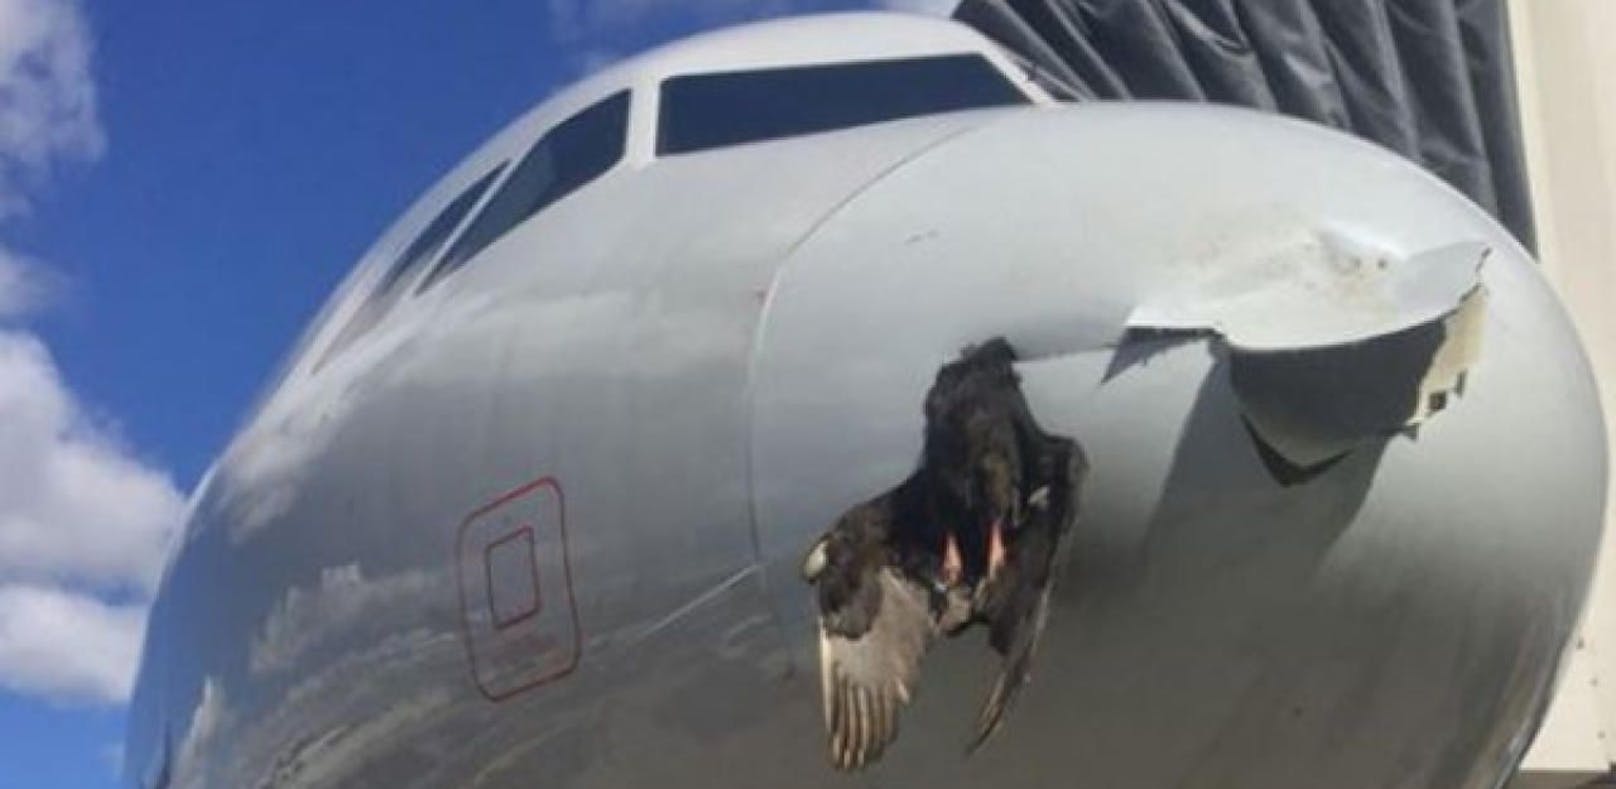 Vogel crasht in Flugzeug und bleibt stecken